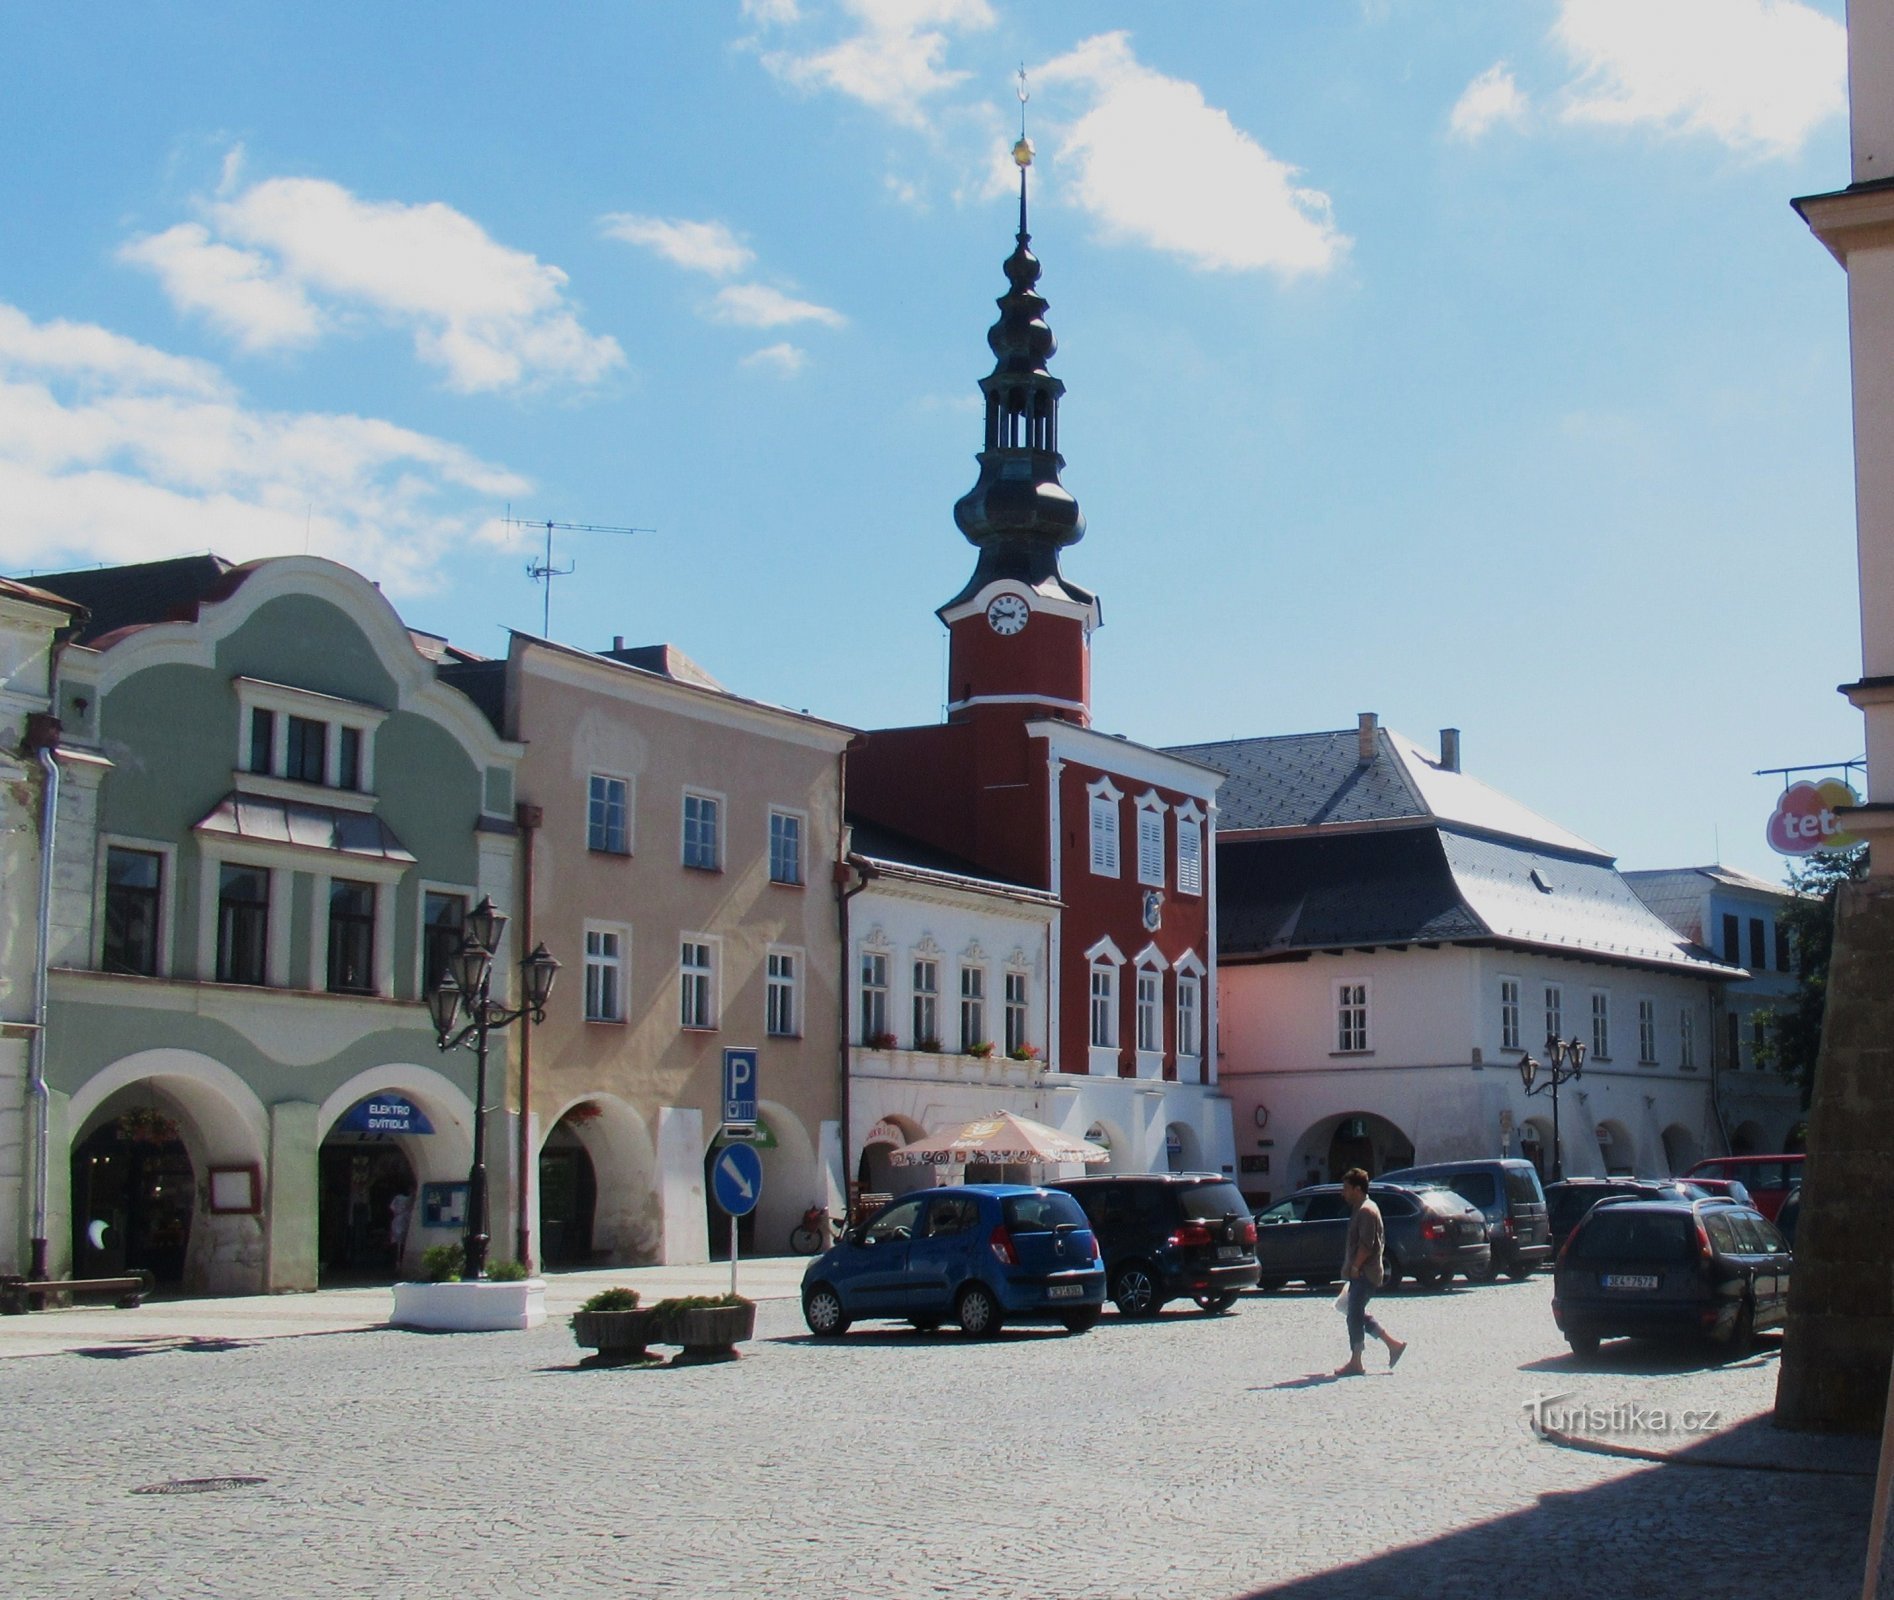 L'ancien hôtel de ville et la maison U Mouřenina sur la place de Svitavy